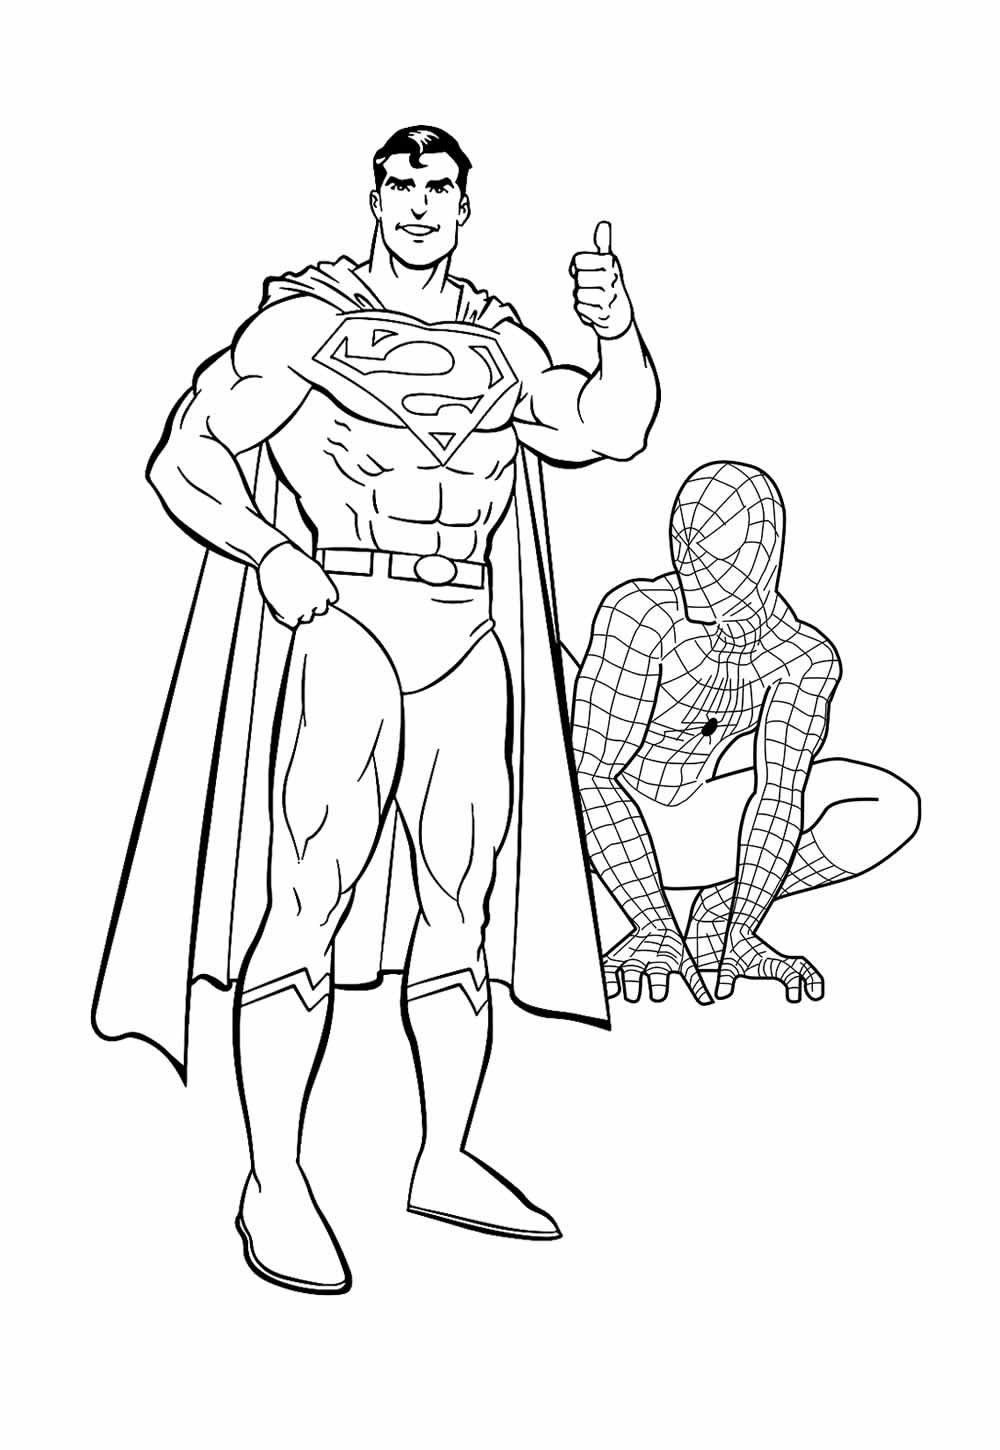 Imagem de Super-Homem e Homem-Aranha para colorir